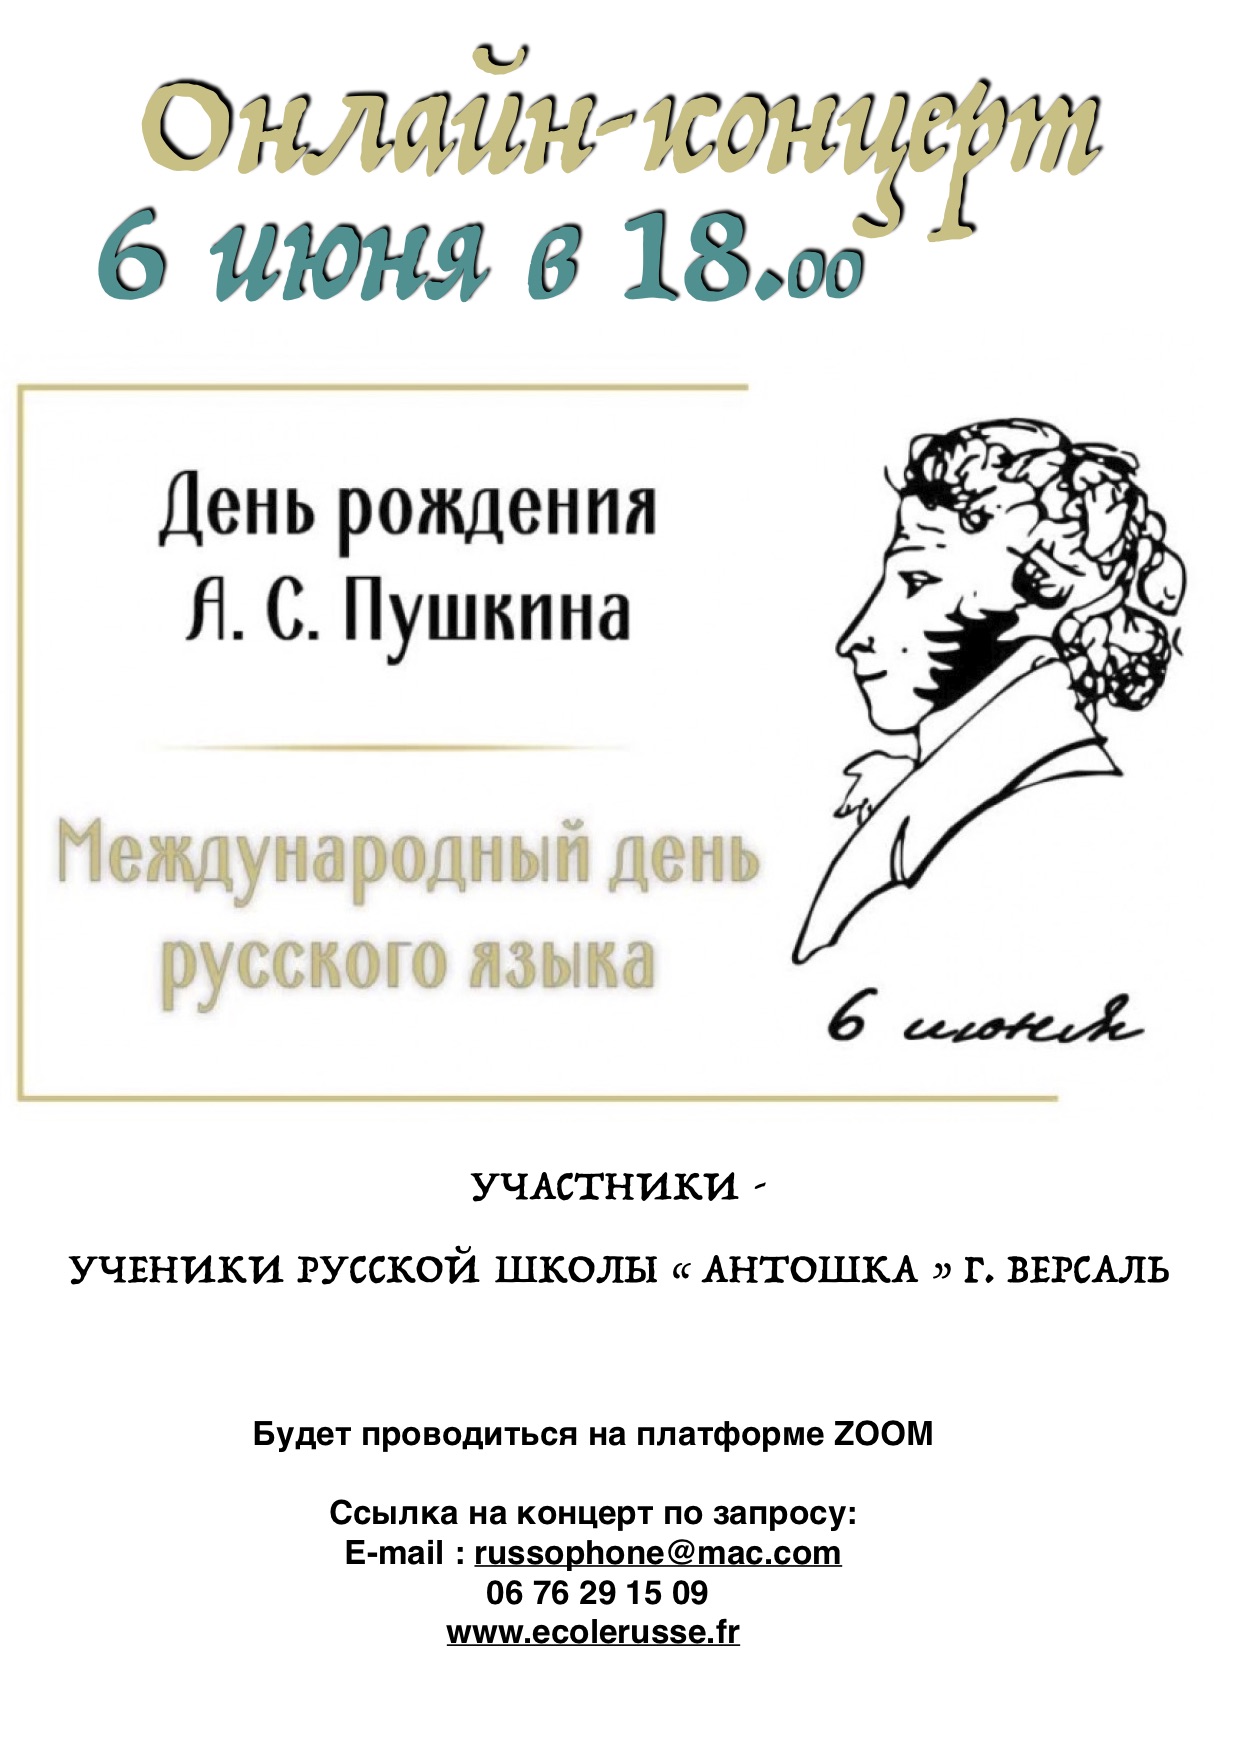 You are currently viewing Концерт ко дню рождения А.С.Пушкина 6.06.2020